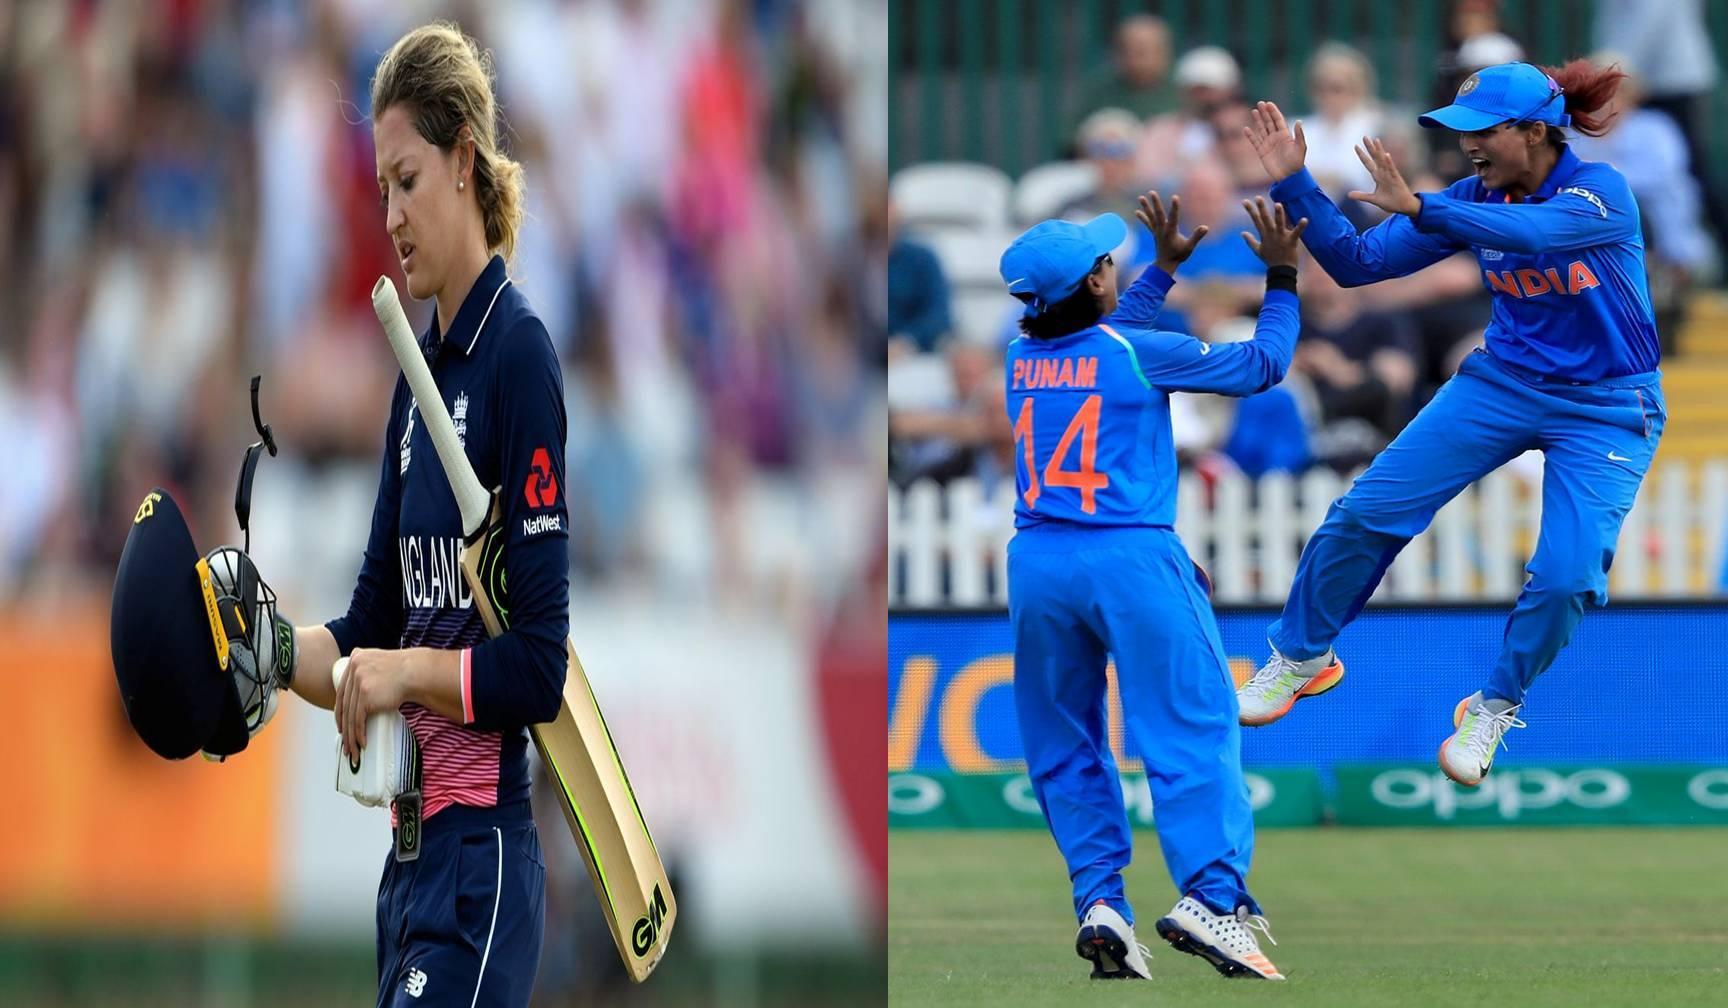 महिला क्रिकेट विश्व कप : भारत का विजयी आगाज, इंग्लैंड को 35 रनों से दी मात